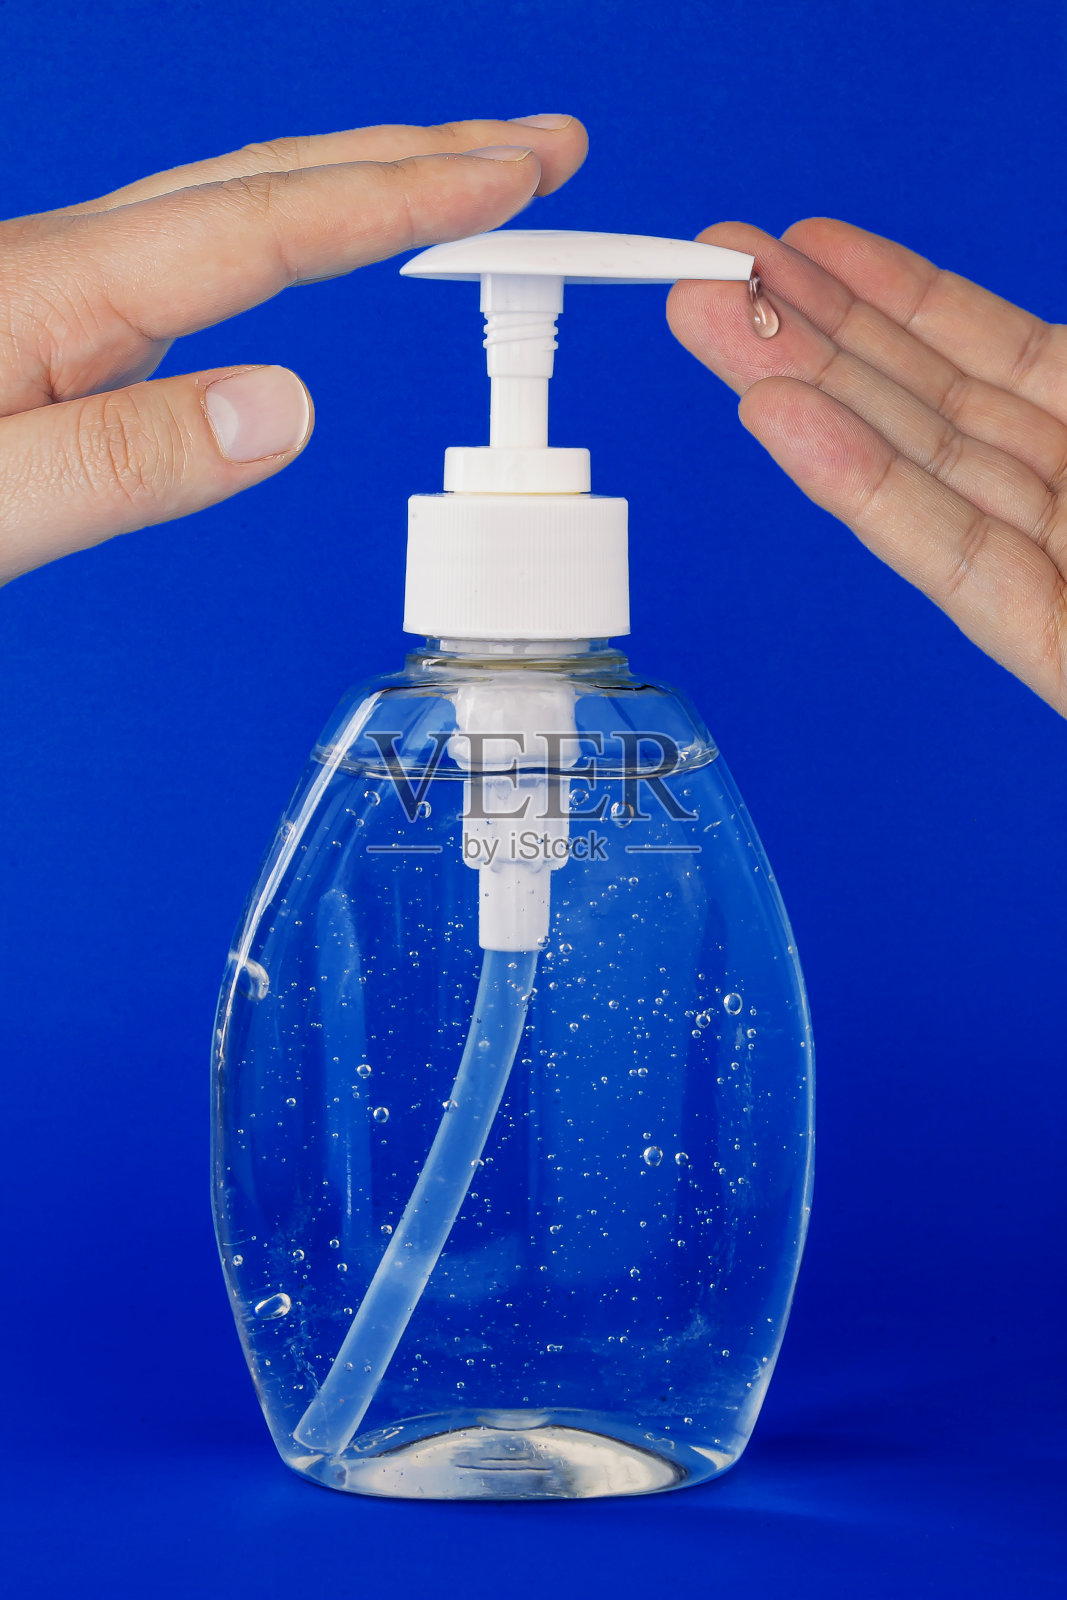 一个人在深蓝色的背景上使用洗手液的特写照片摄影图片